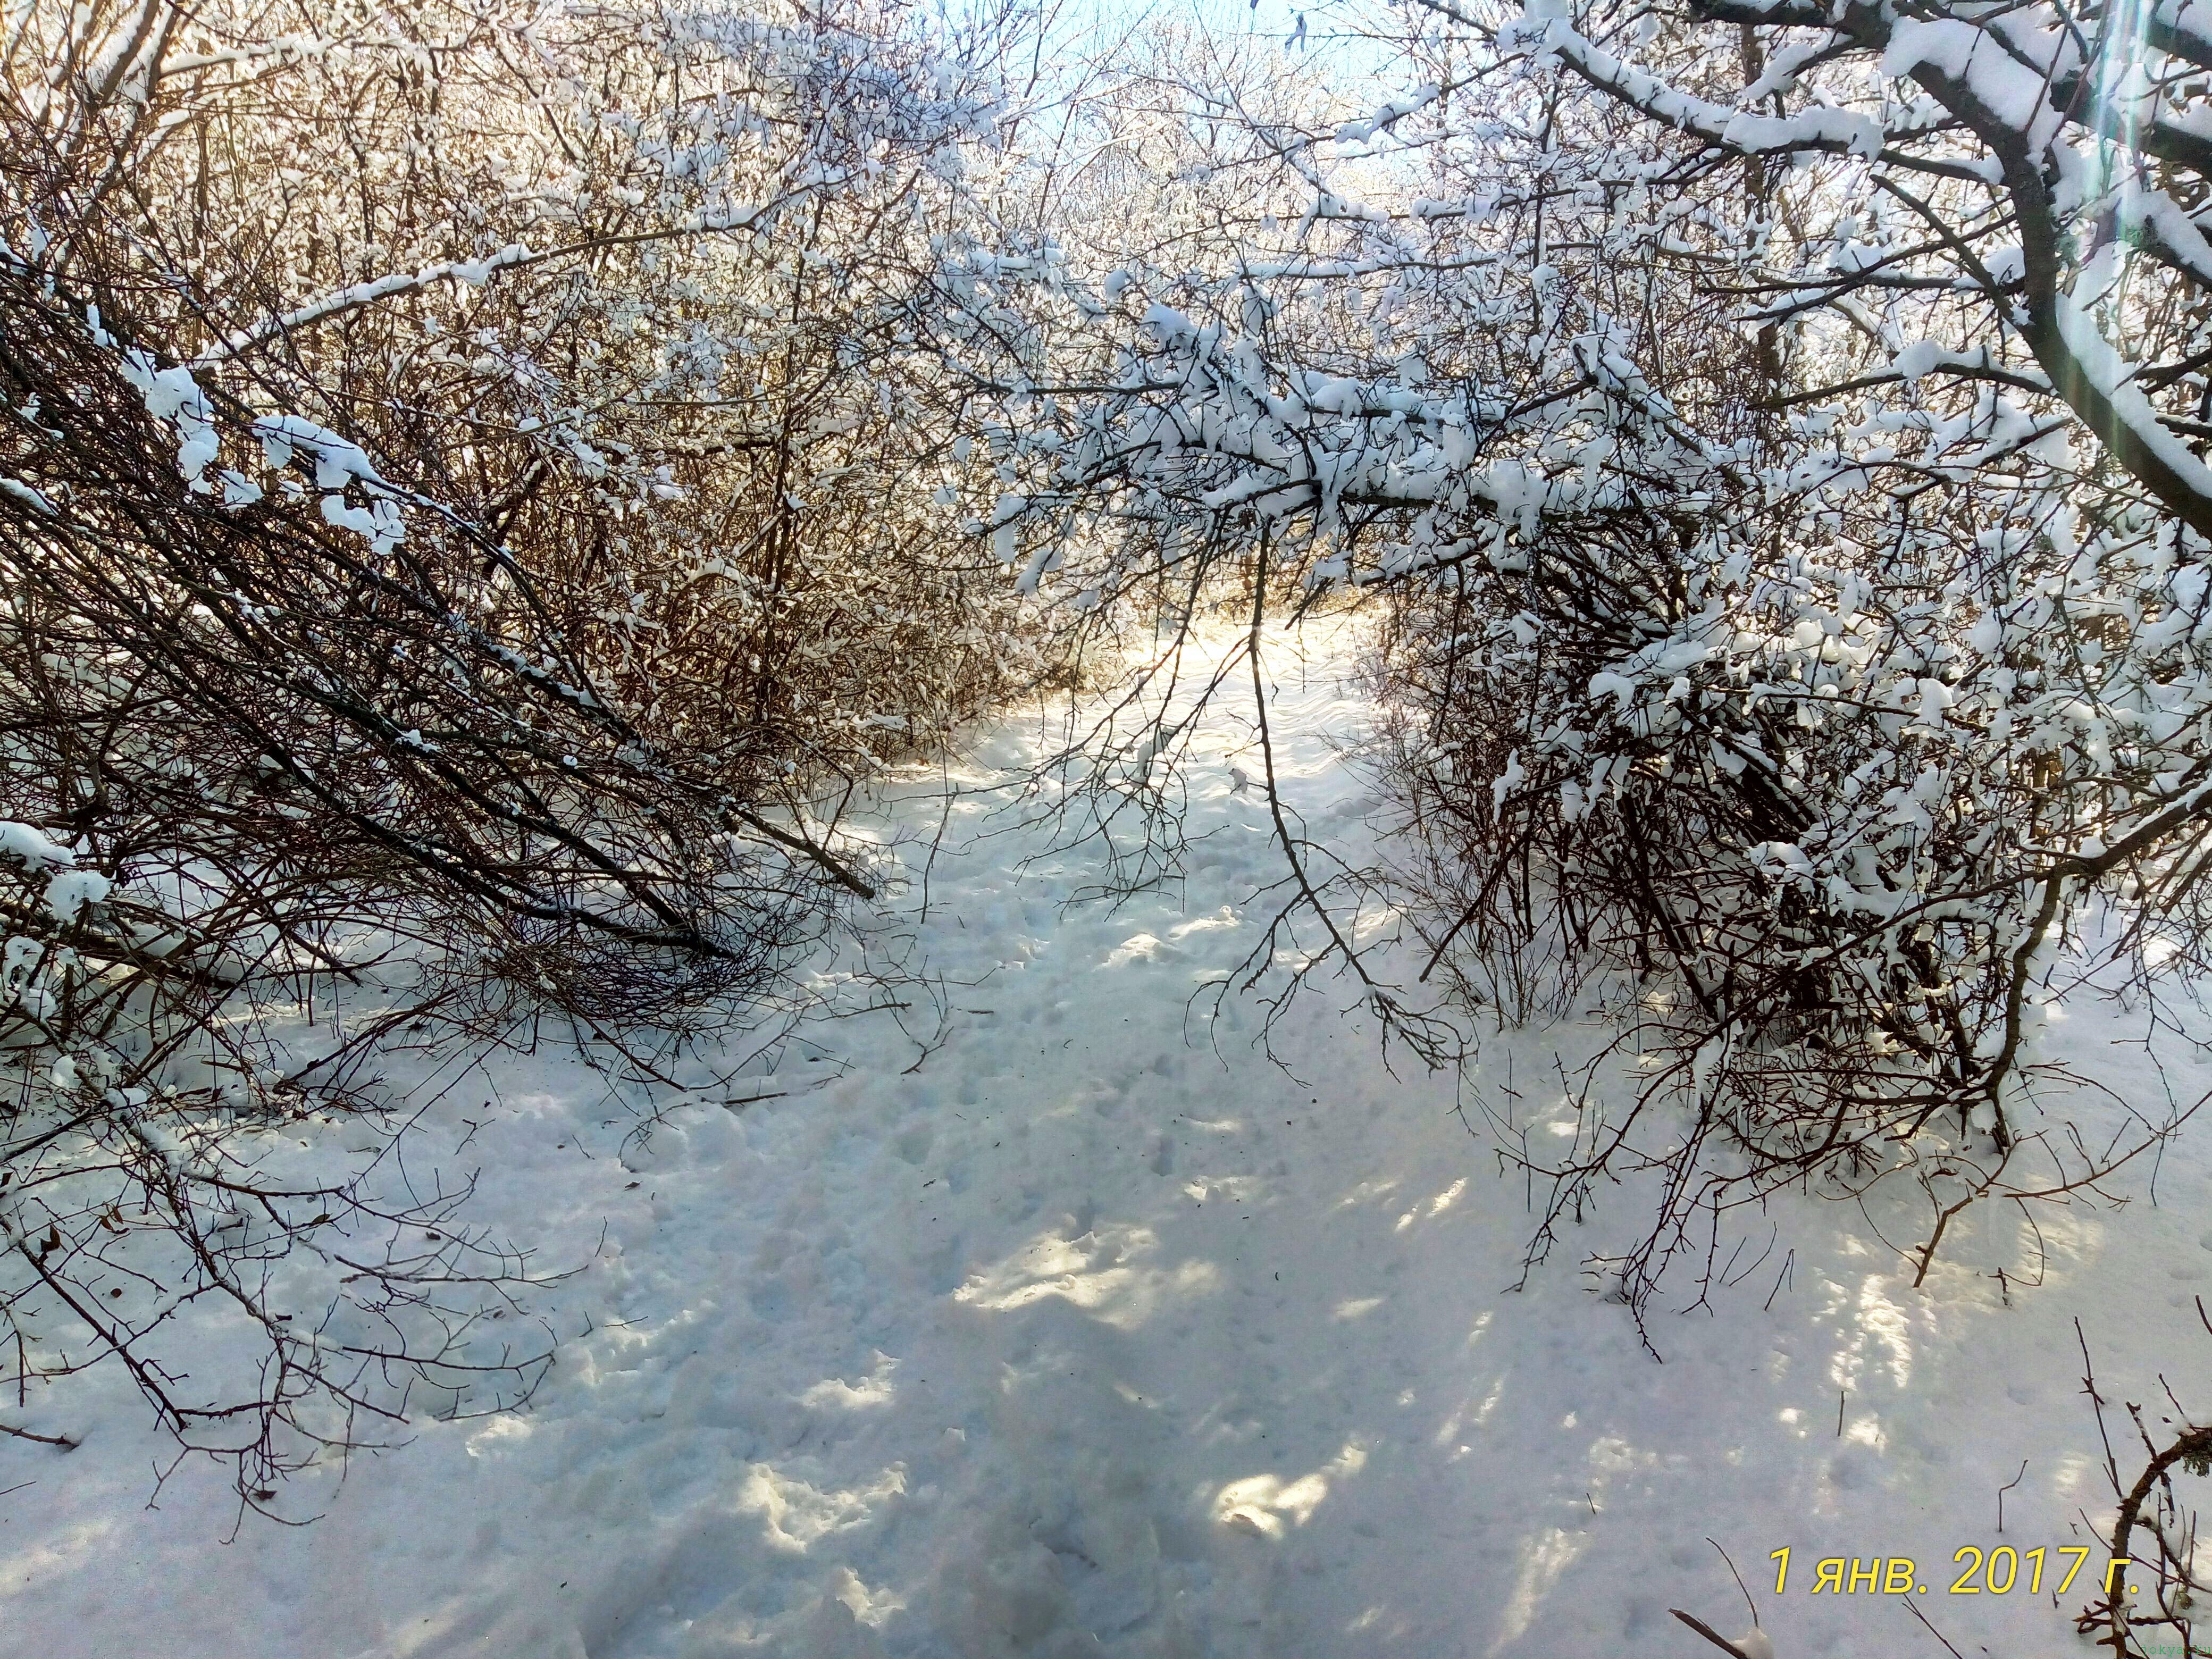 Пикник в лесу на 1 января 2017 года у реки Карасевка, где исток фото заметка о моей реальности в Крыму jokya.ru 